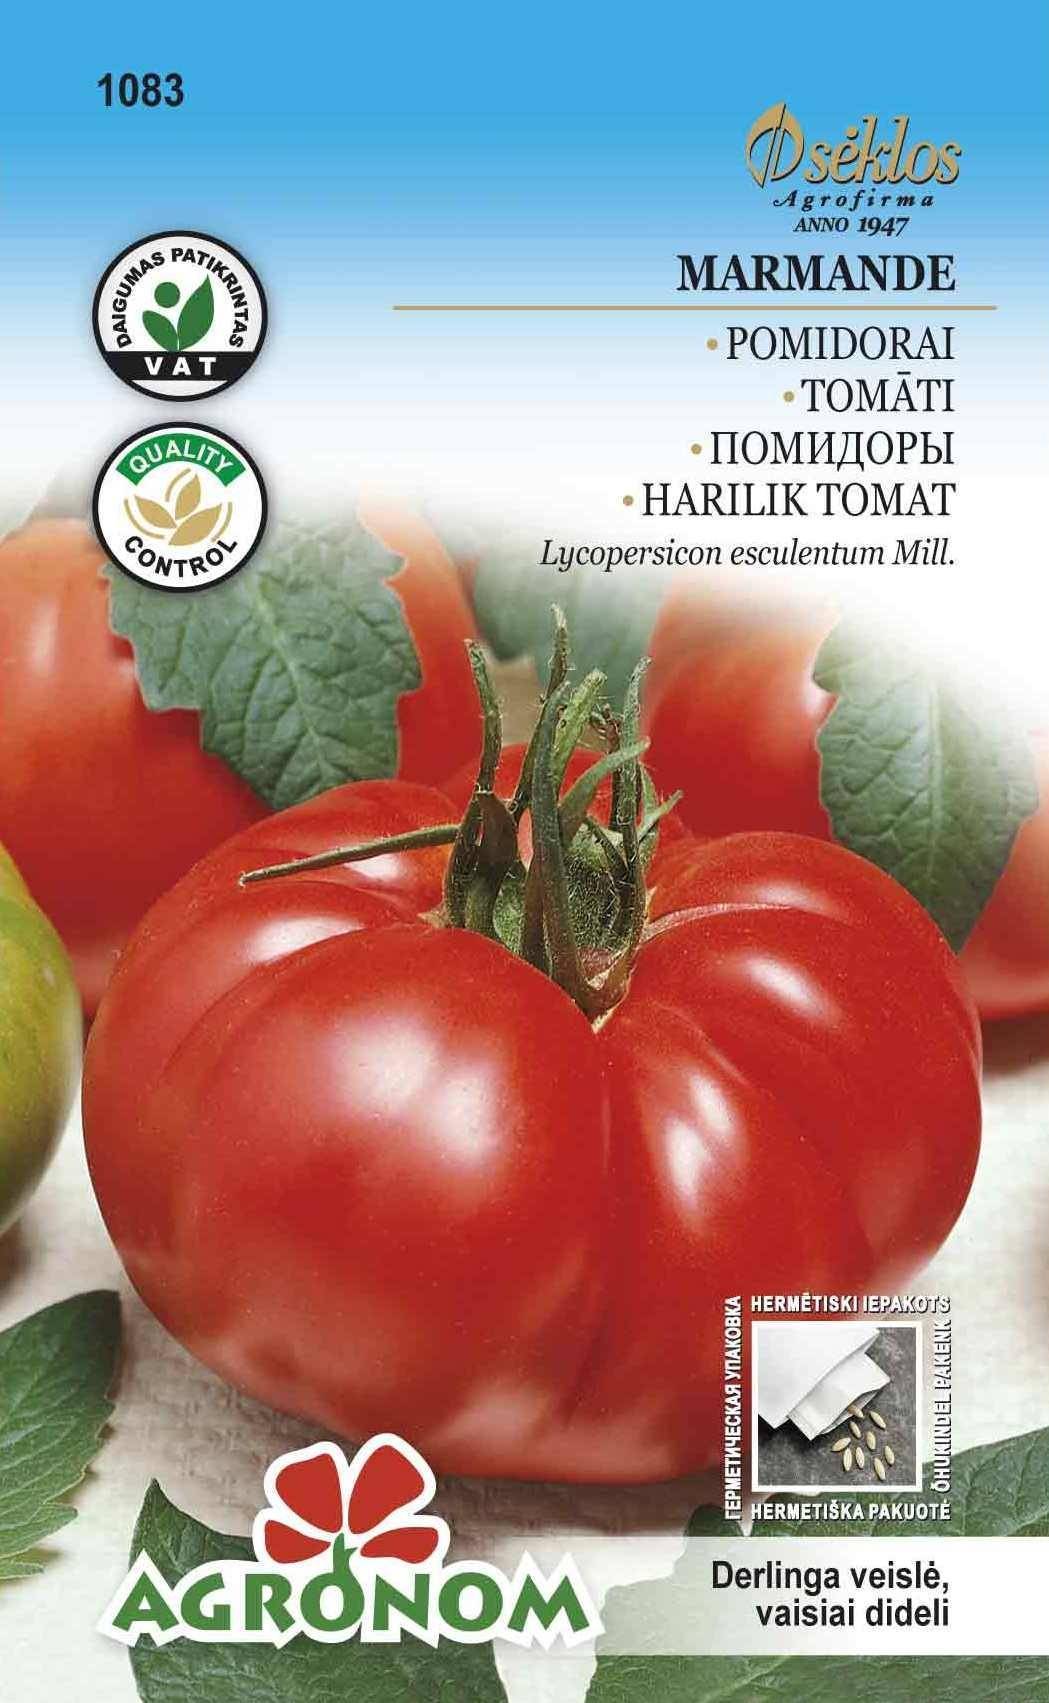 Описание томата Марманде и агротехника выращивания сорта